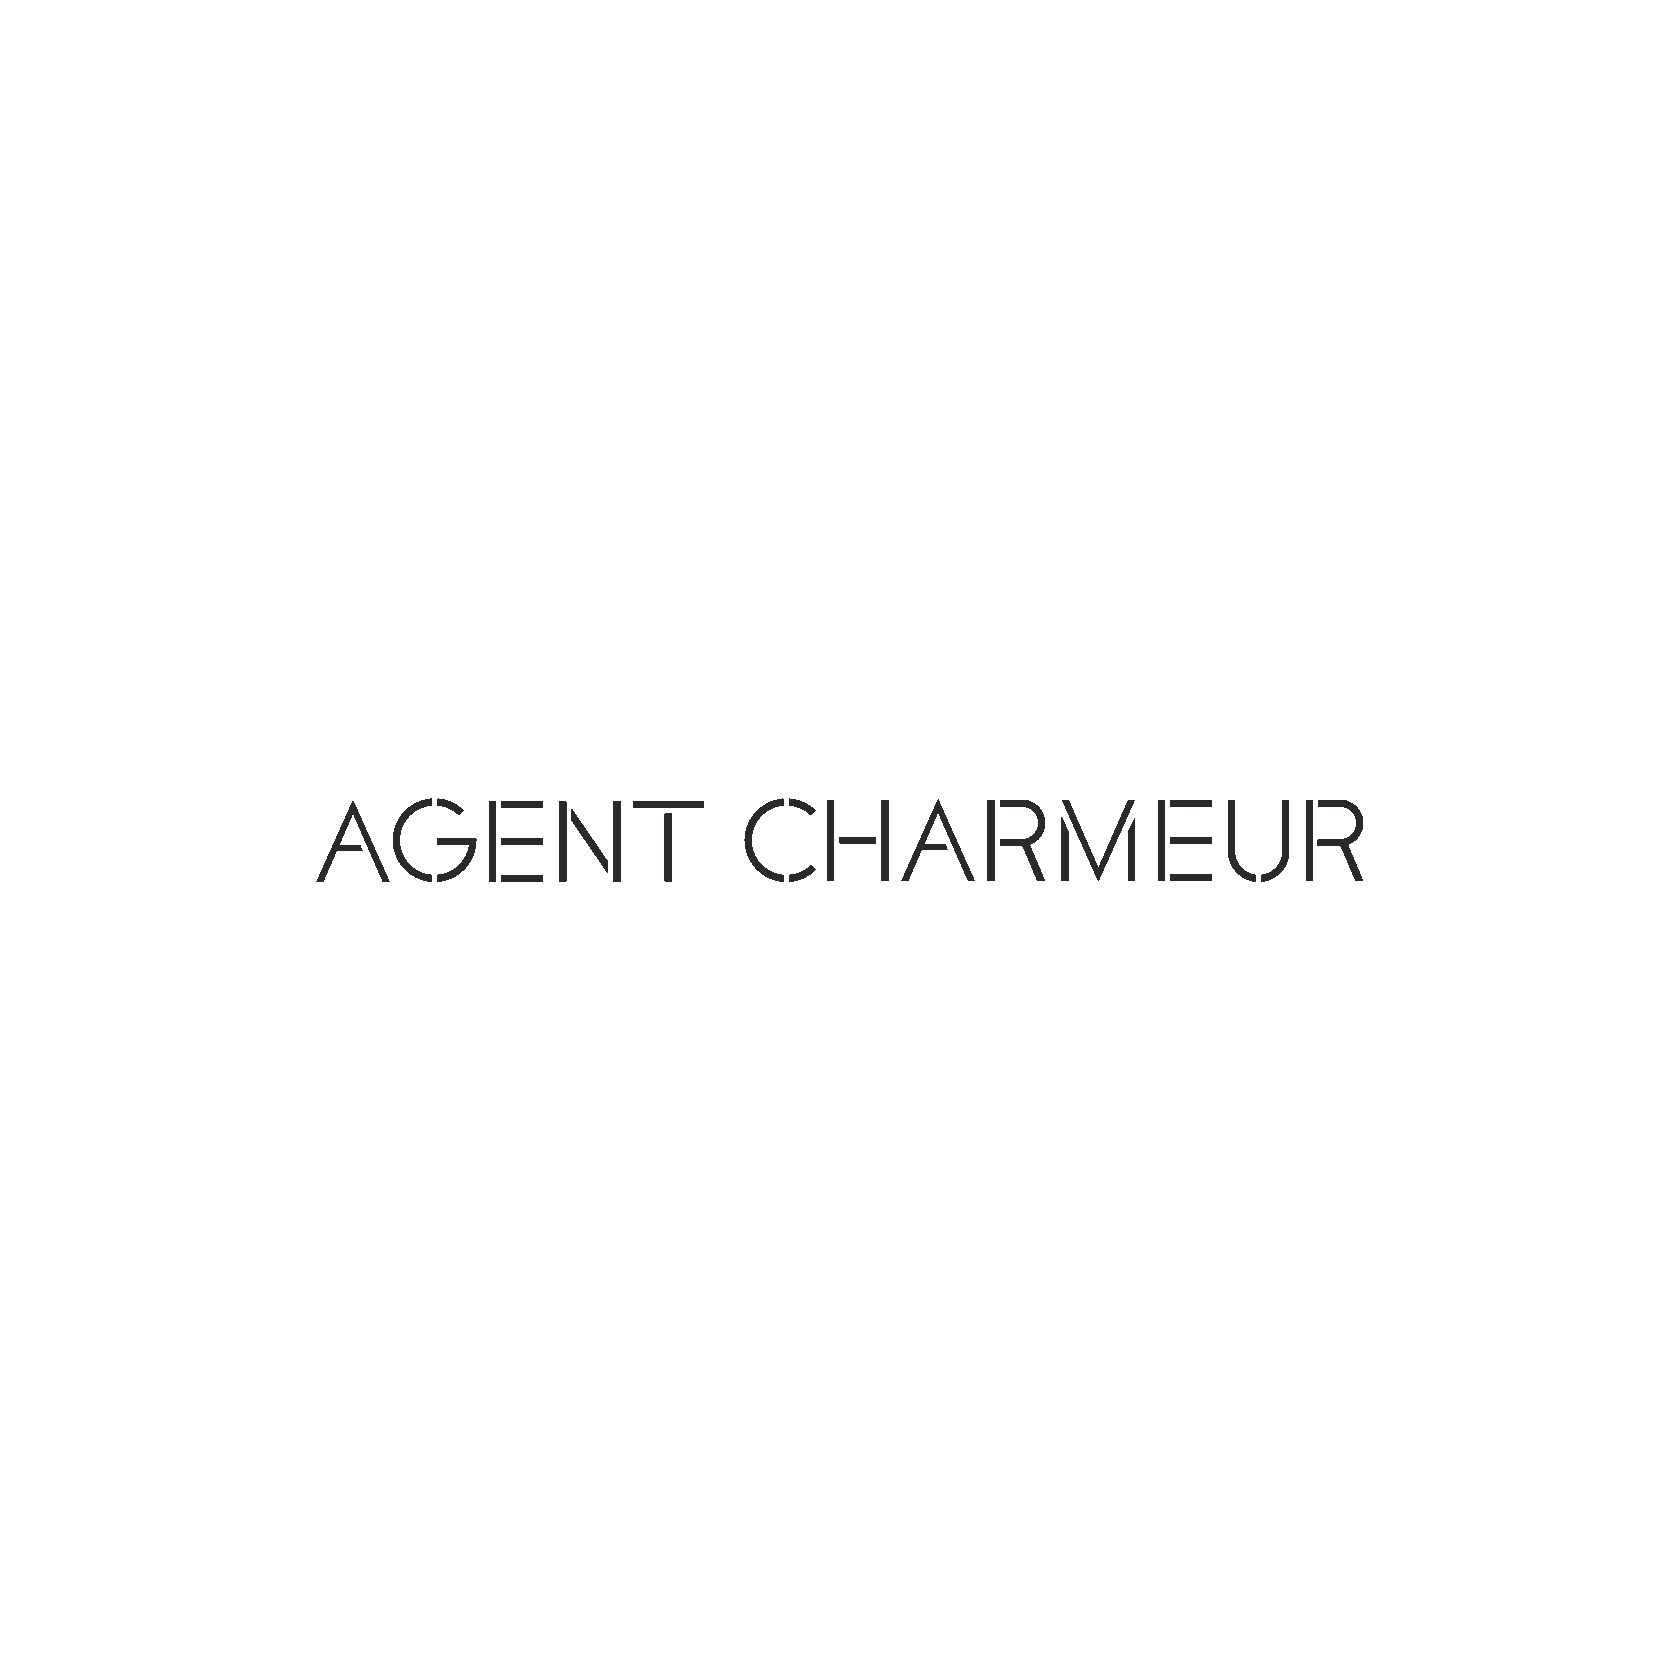 Логотип AGENT CHARMEUR 